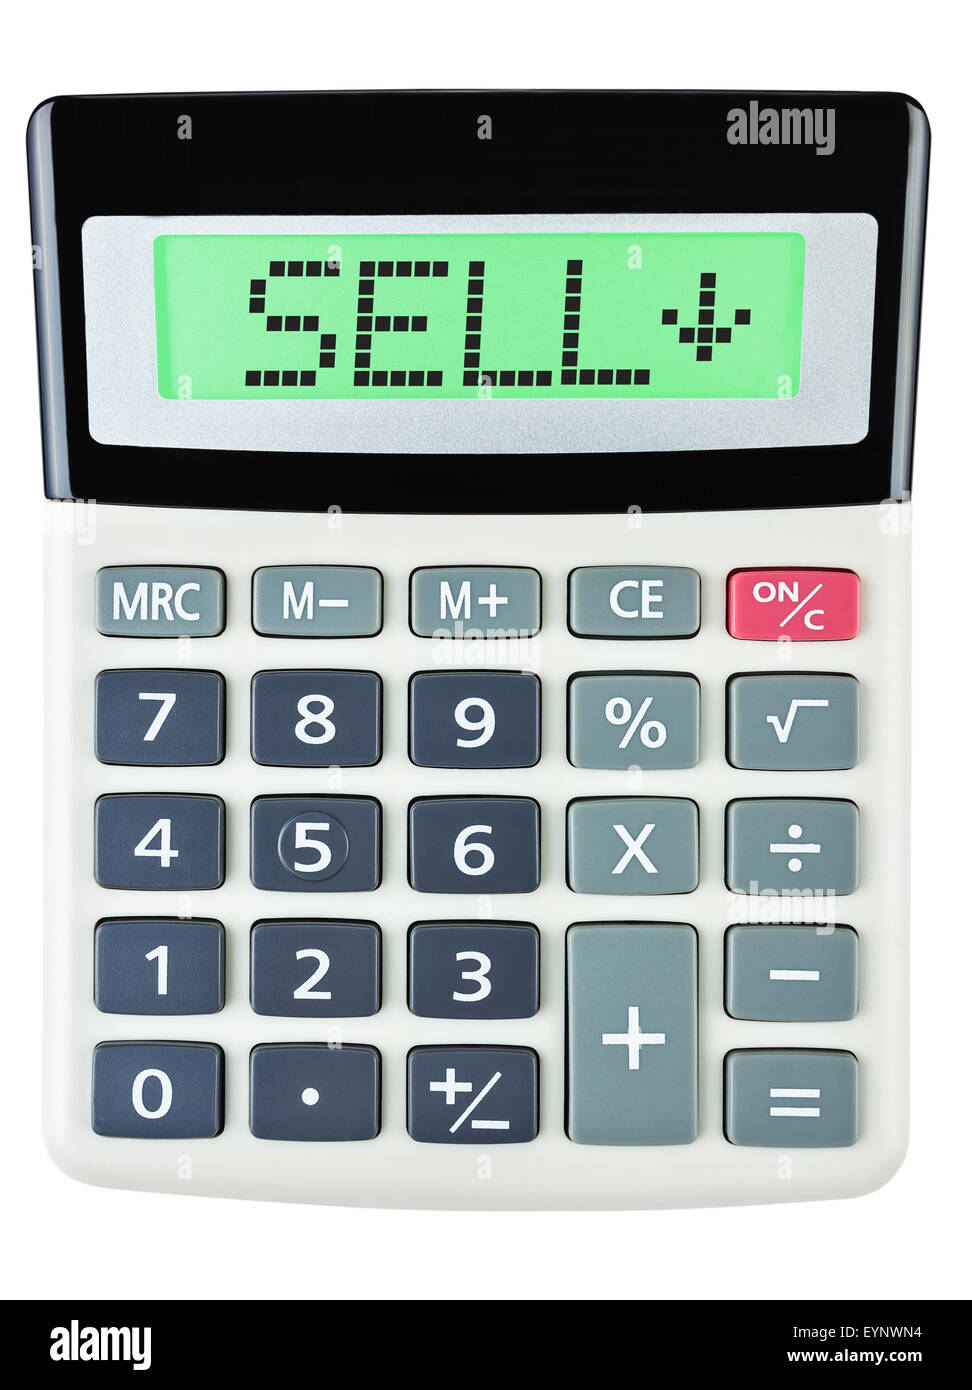 Calculatrice avec affichage sur vendre isolé sur fond blanc Banque D'Images